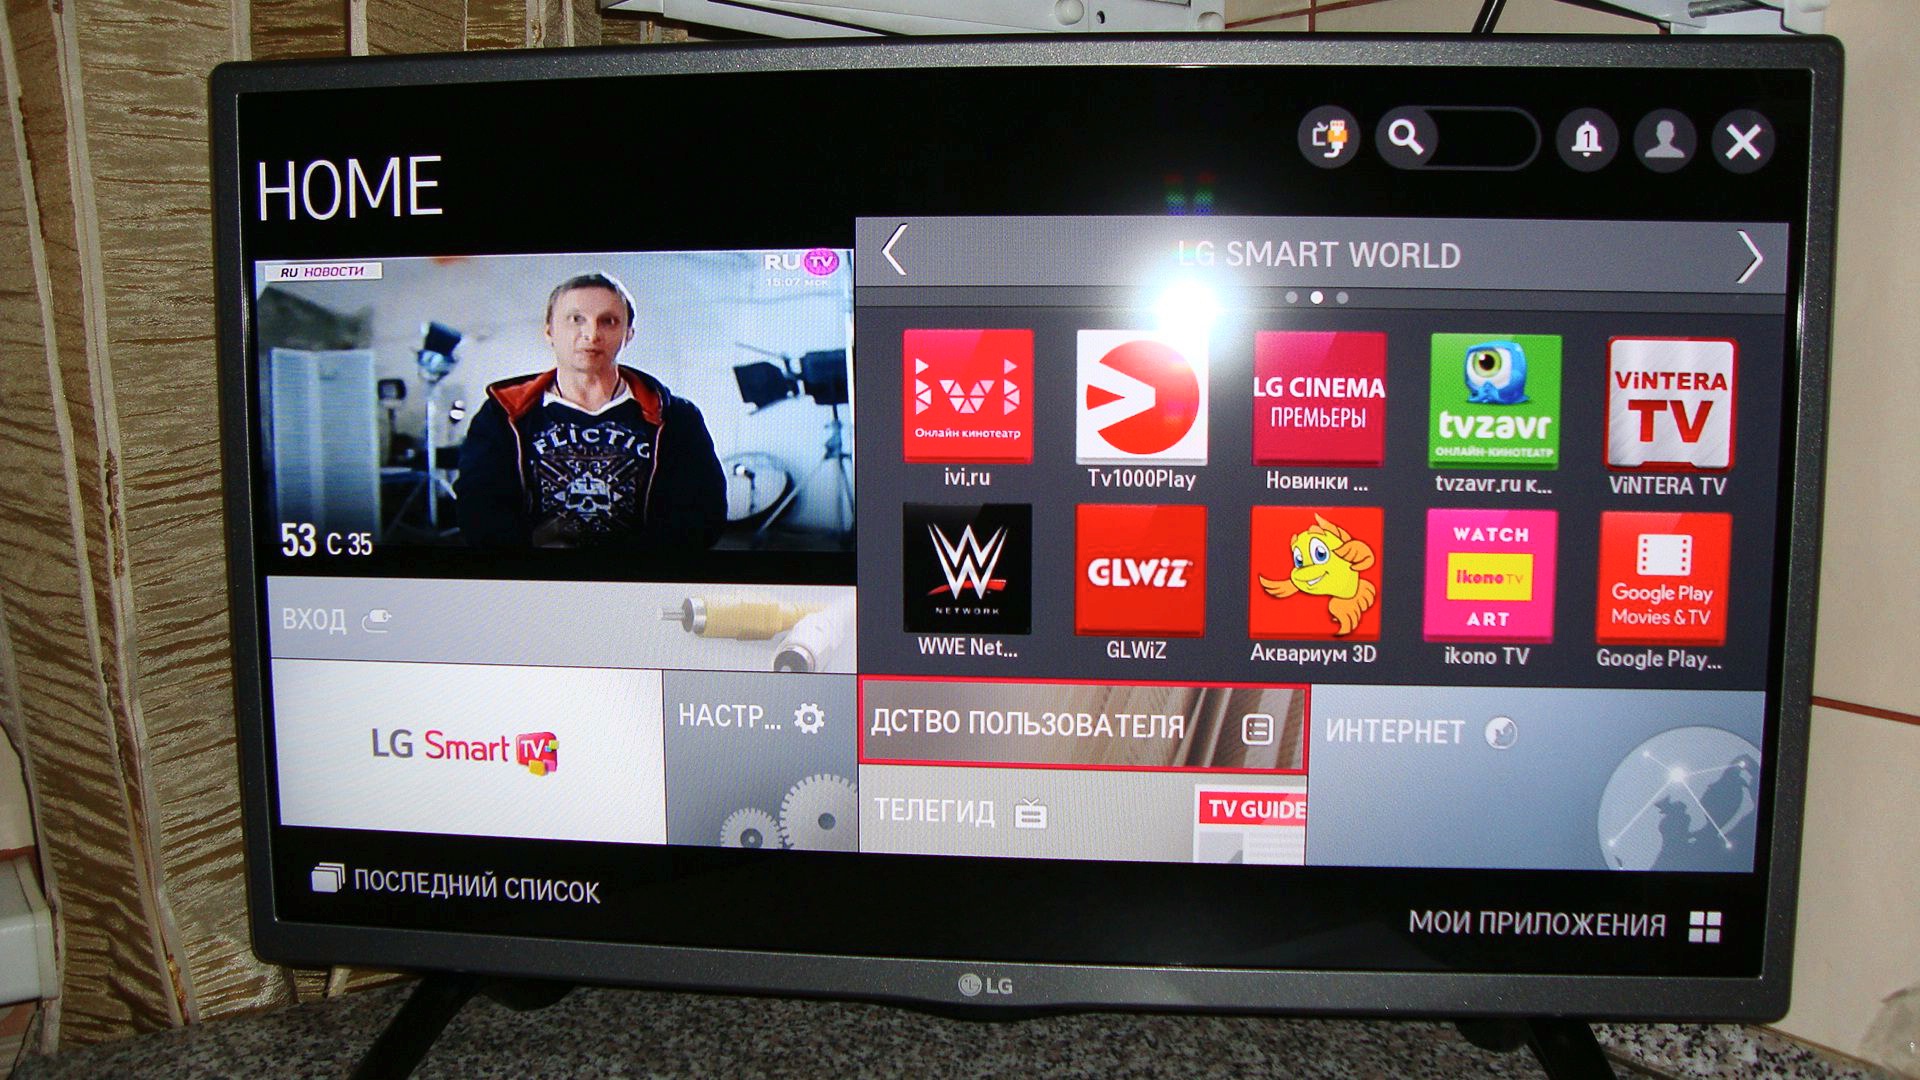 Приложение для телевизора lg tv. Телевизор LG 28lf491u. Каналы ТВ на LG смарт. Телевизор LG не смарт ТВ. Меню смарт ТВ LG.